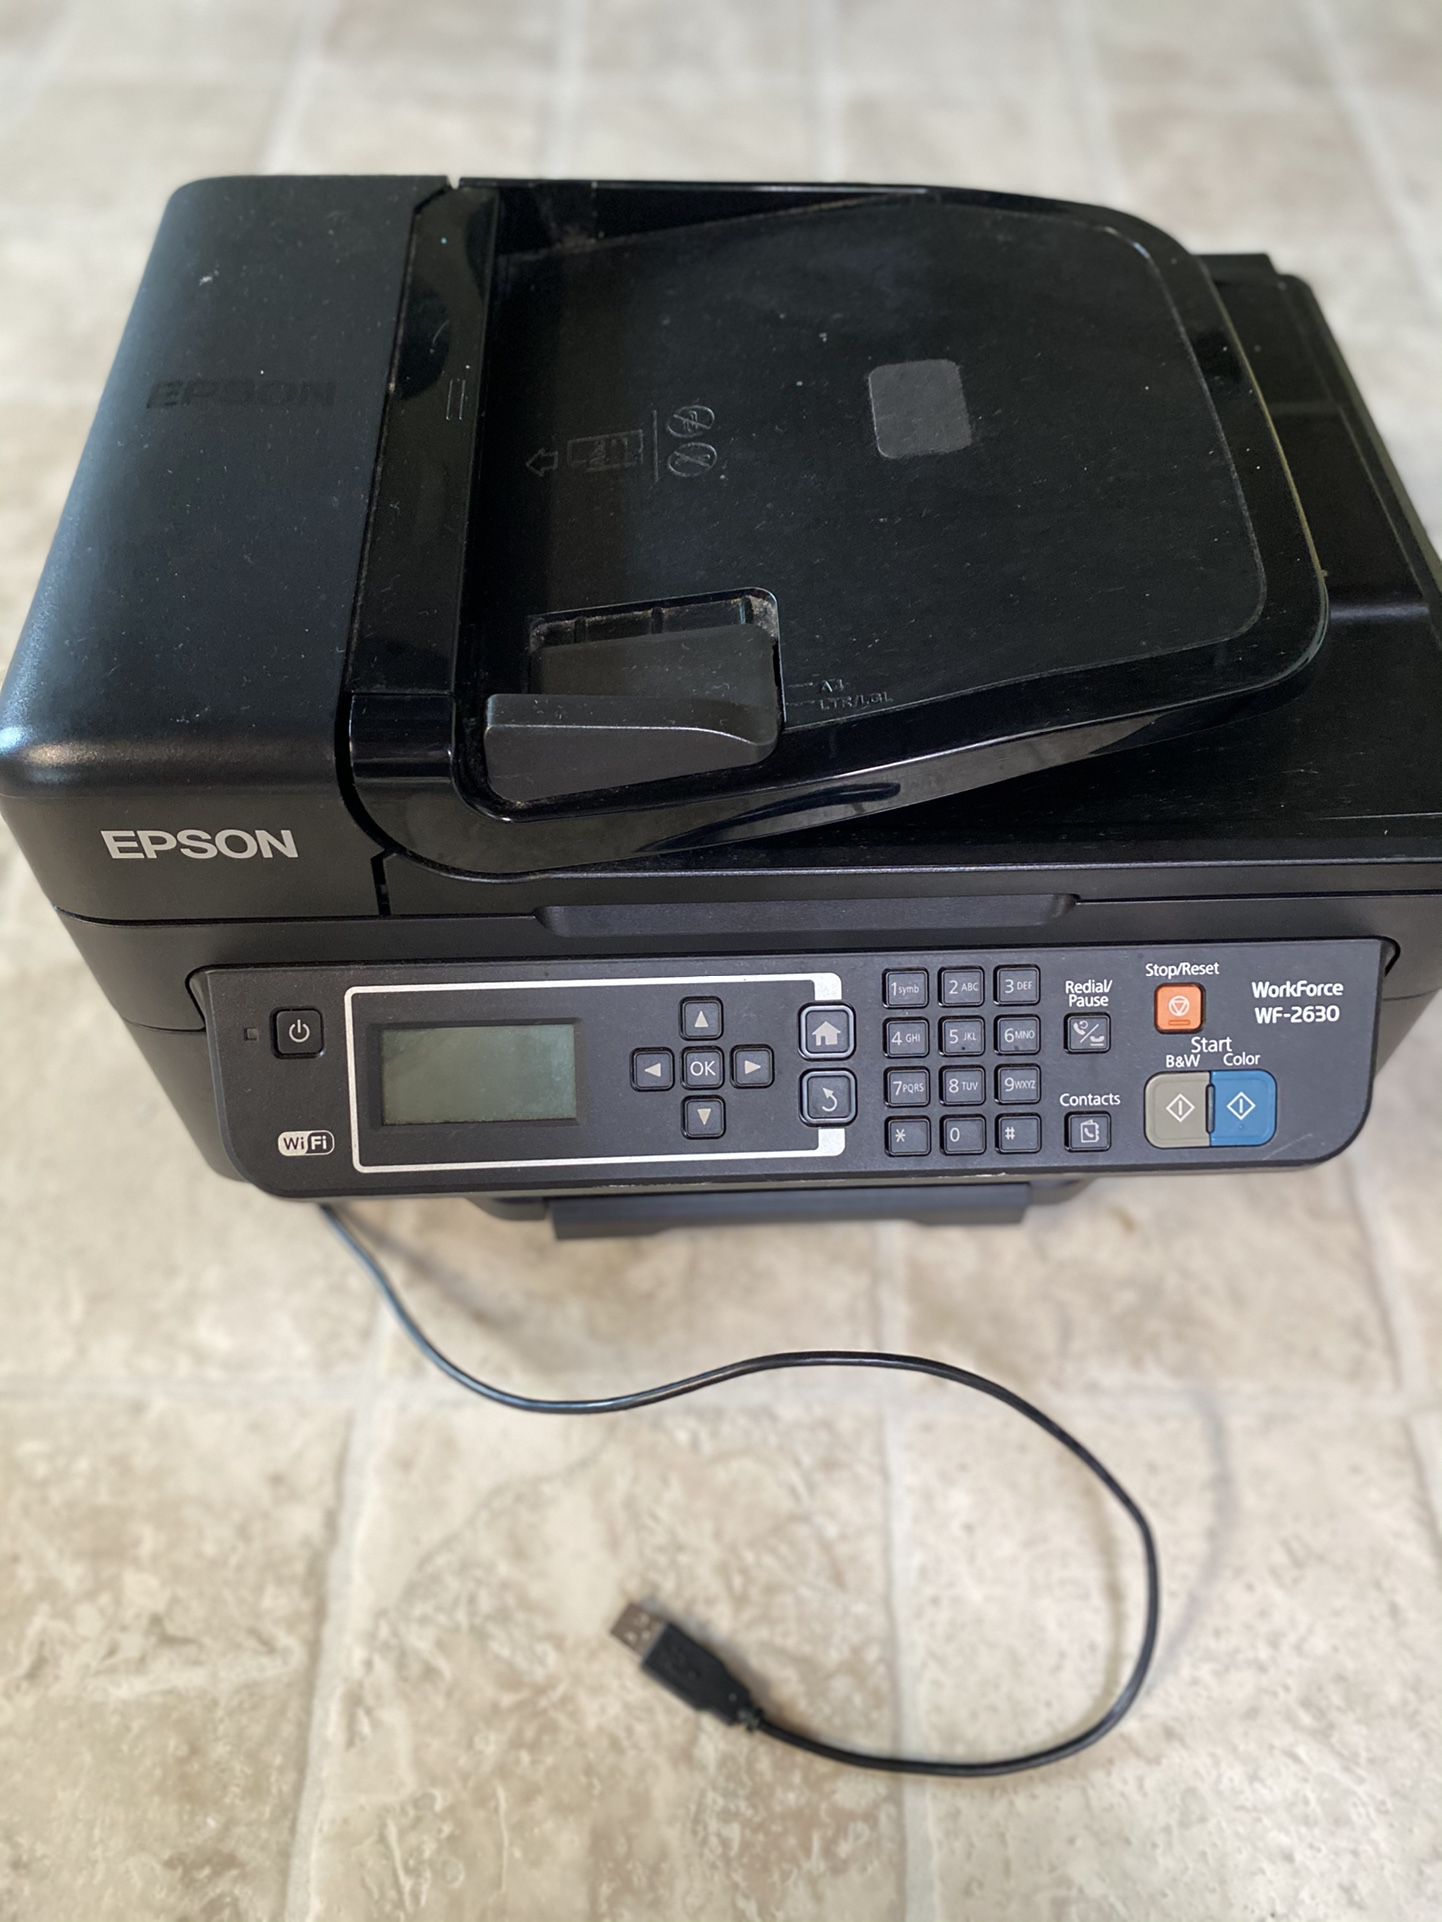 Rosin Printer/Scanner/fax